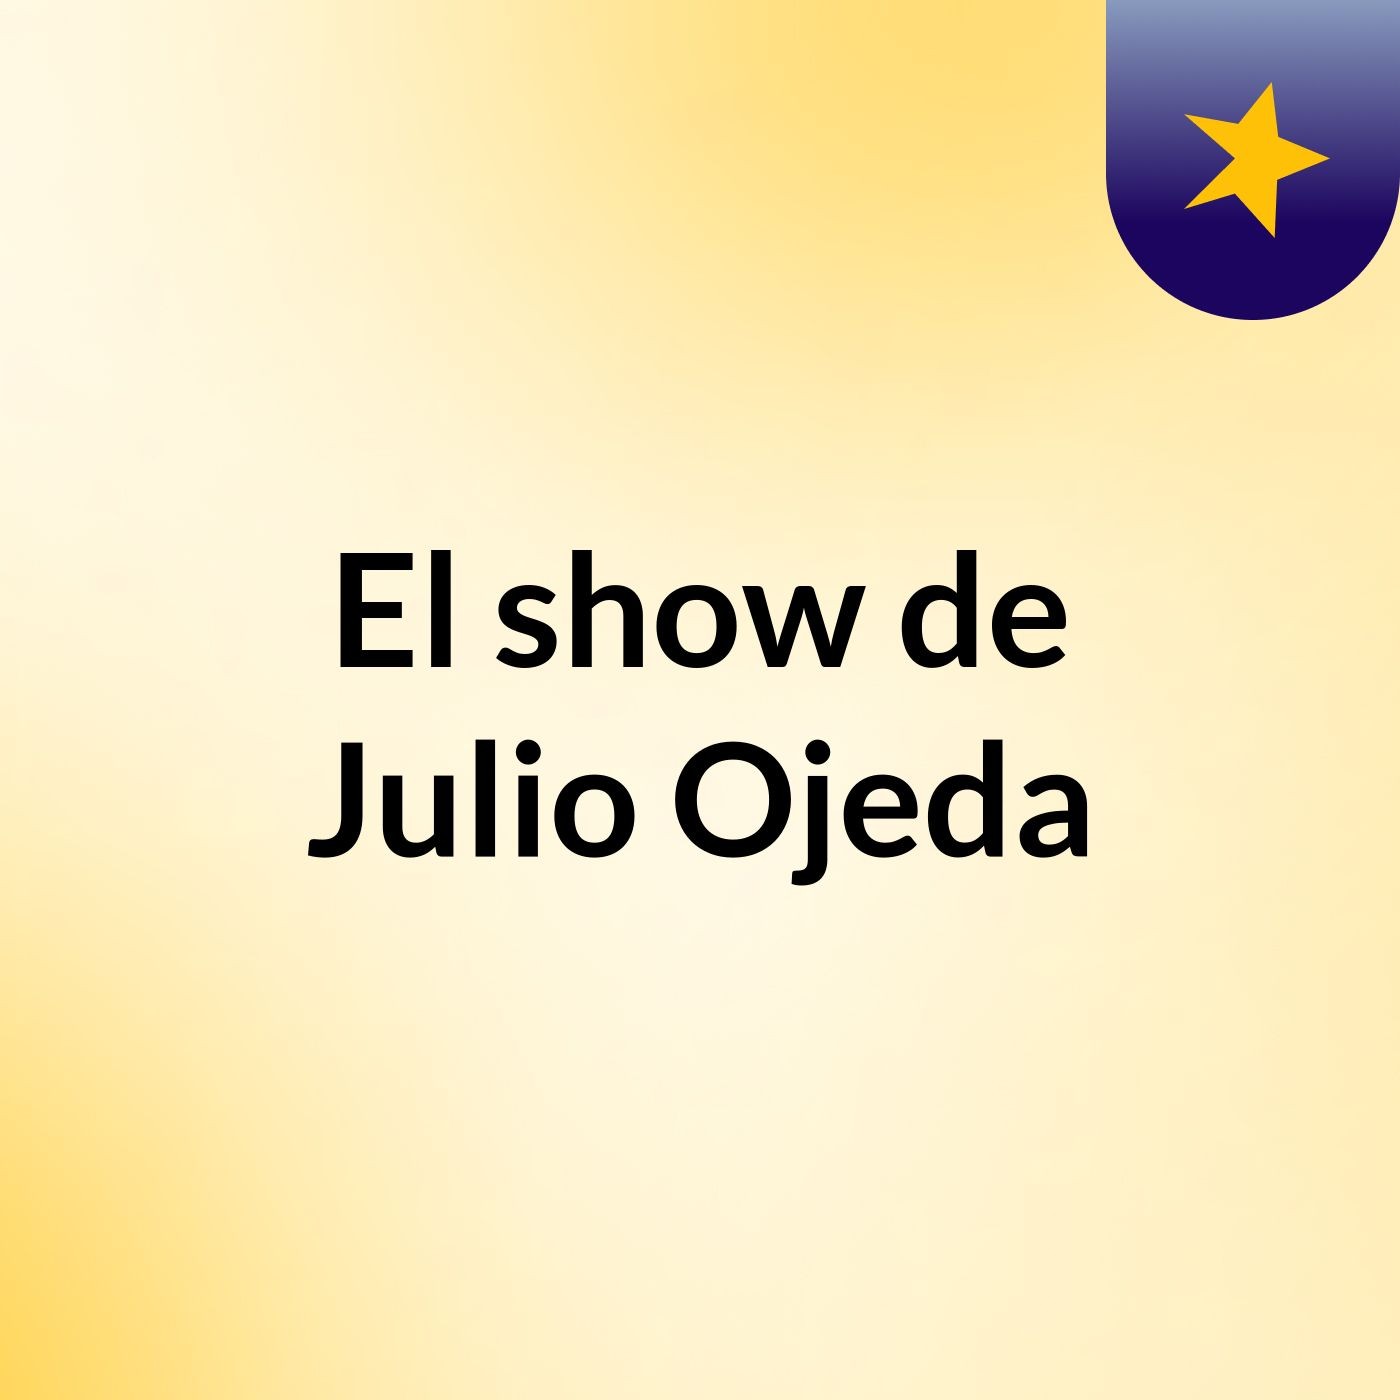 El show de Julio Ojeda